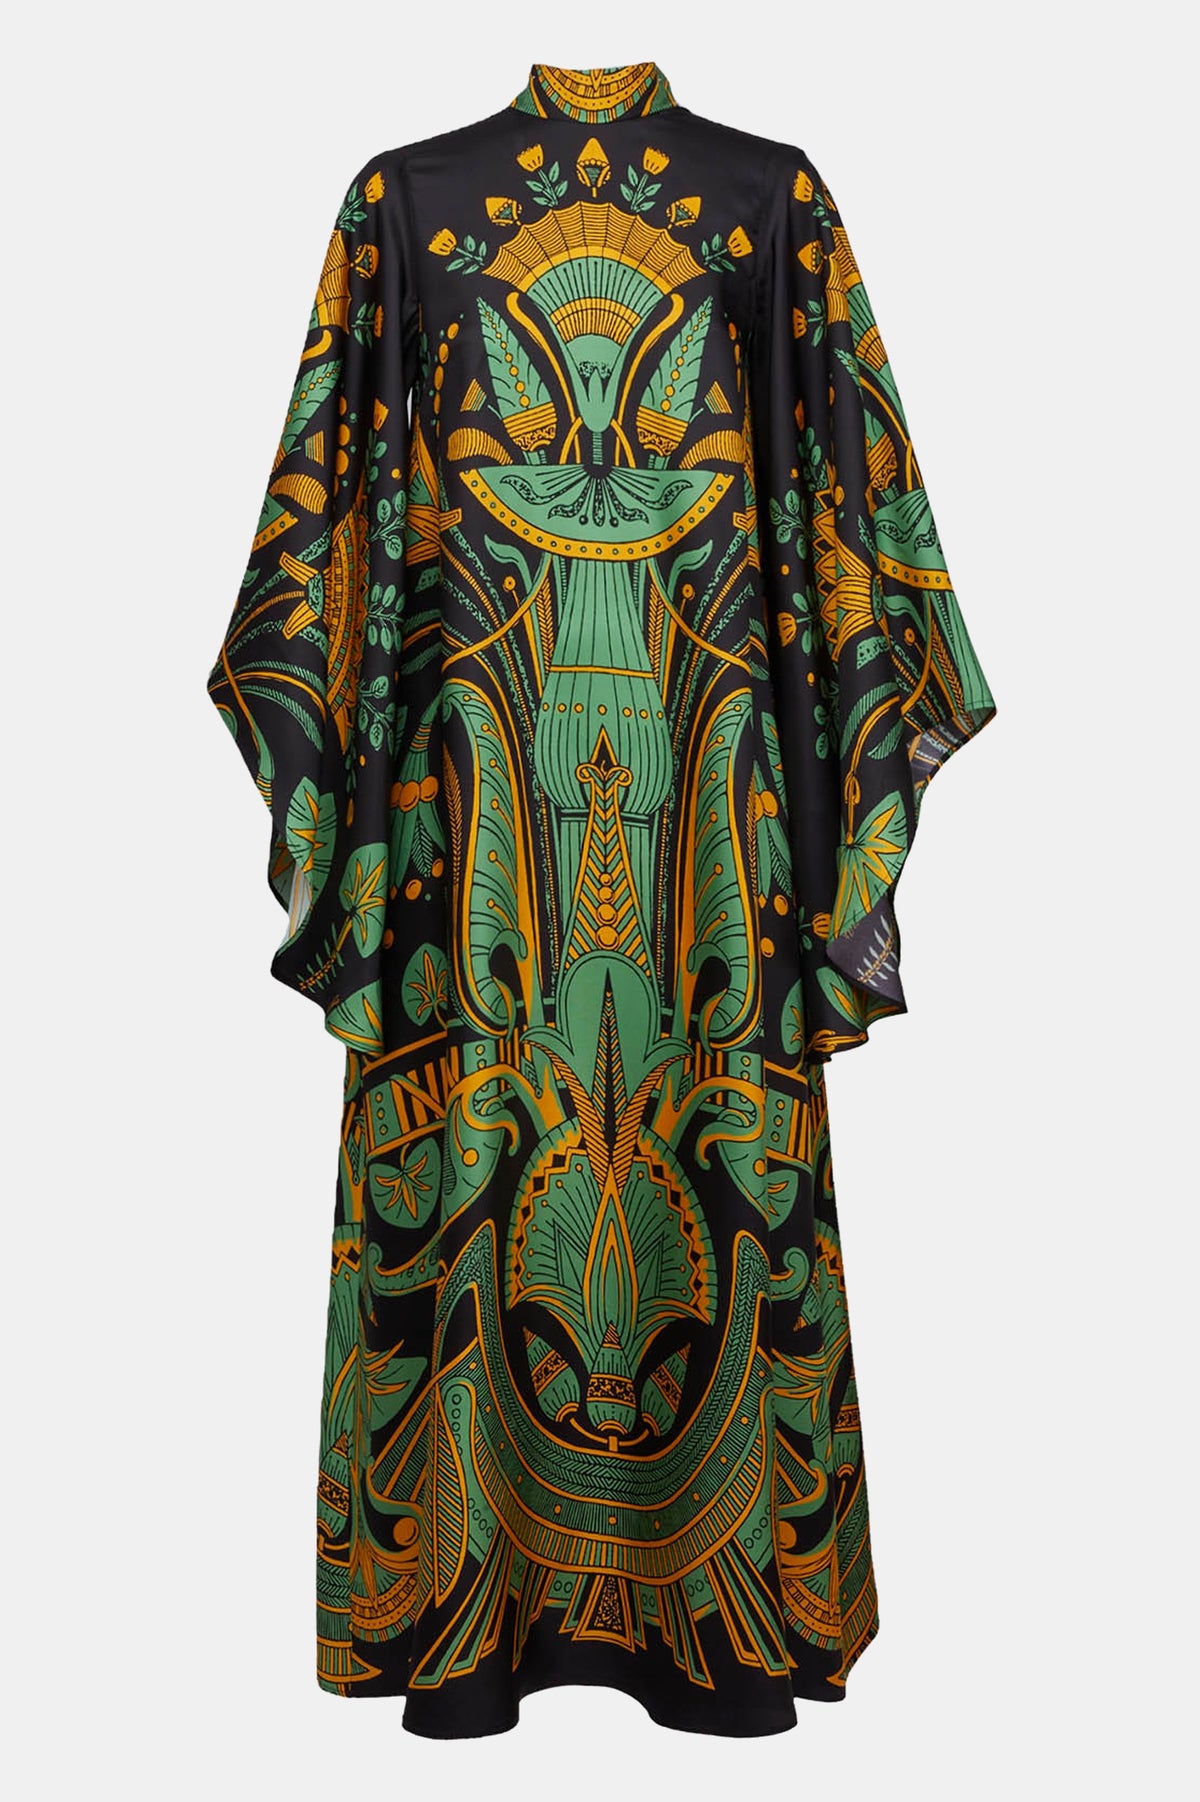 Magnifico Midi Dress in The Nile